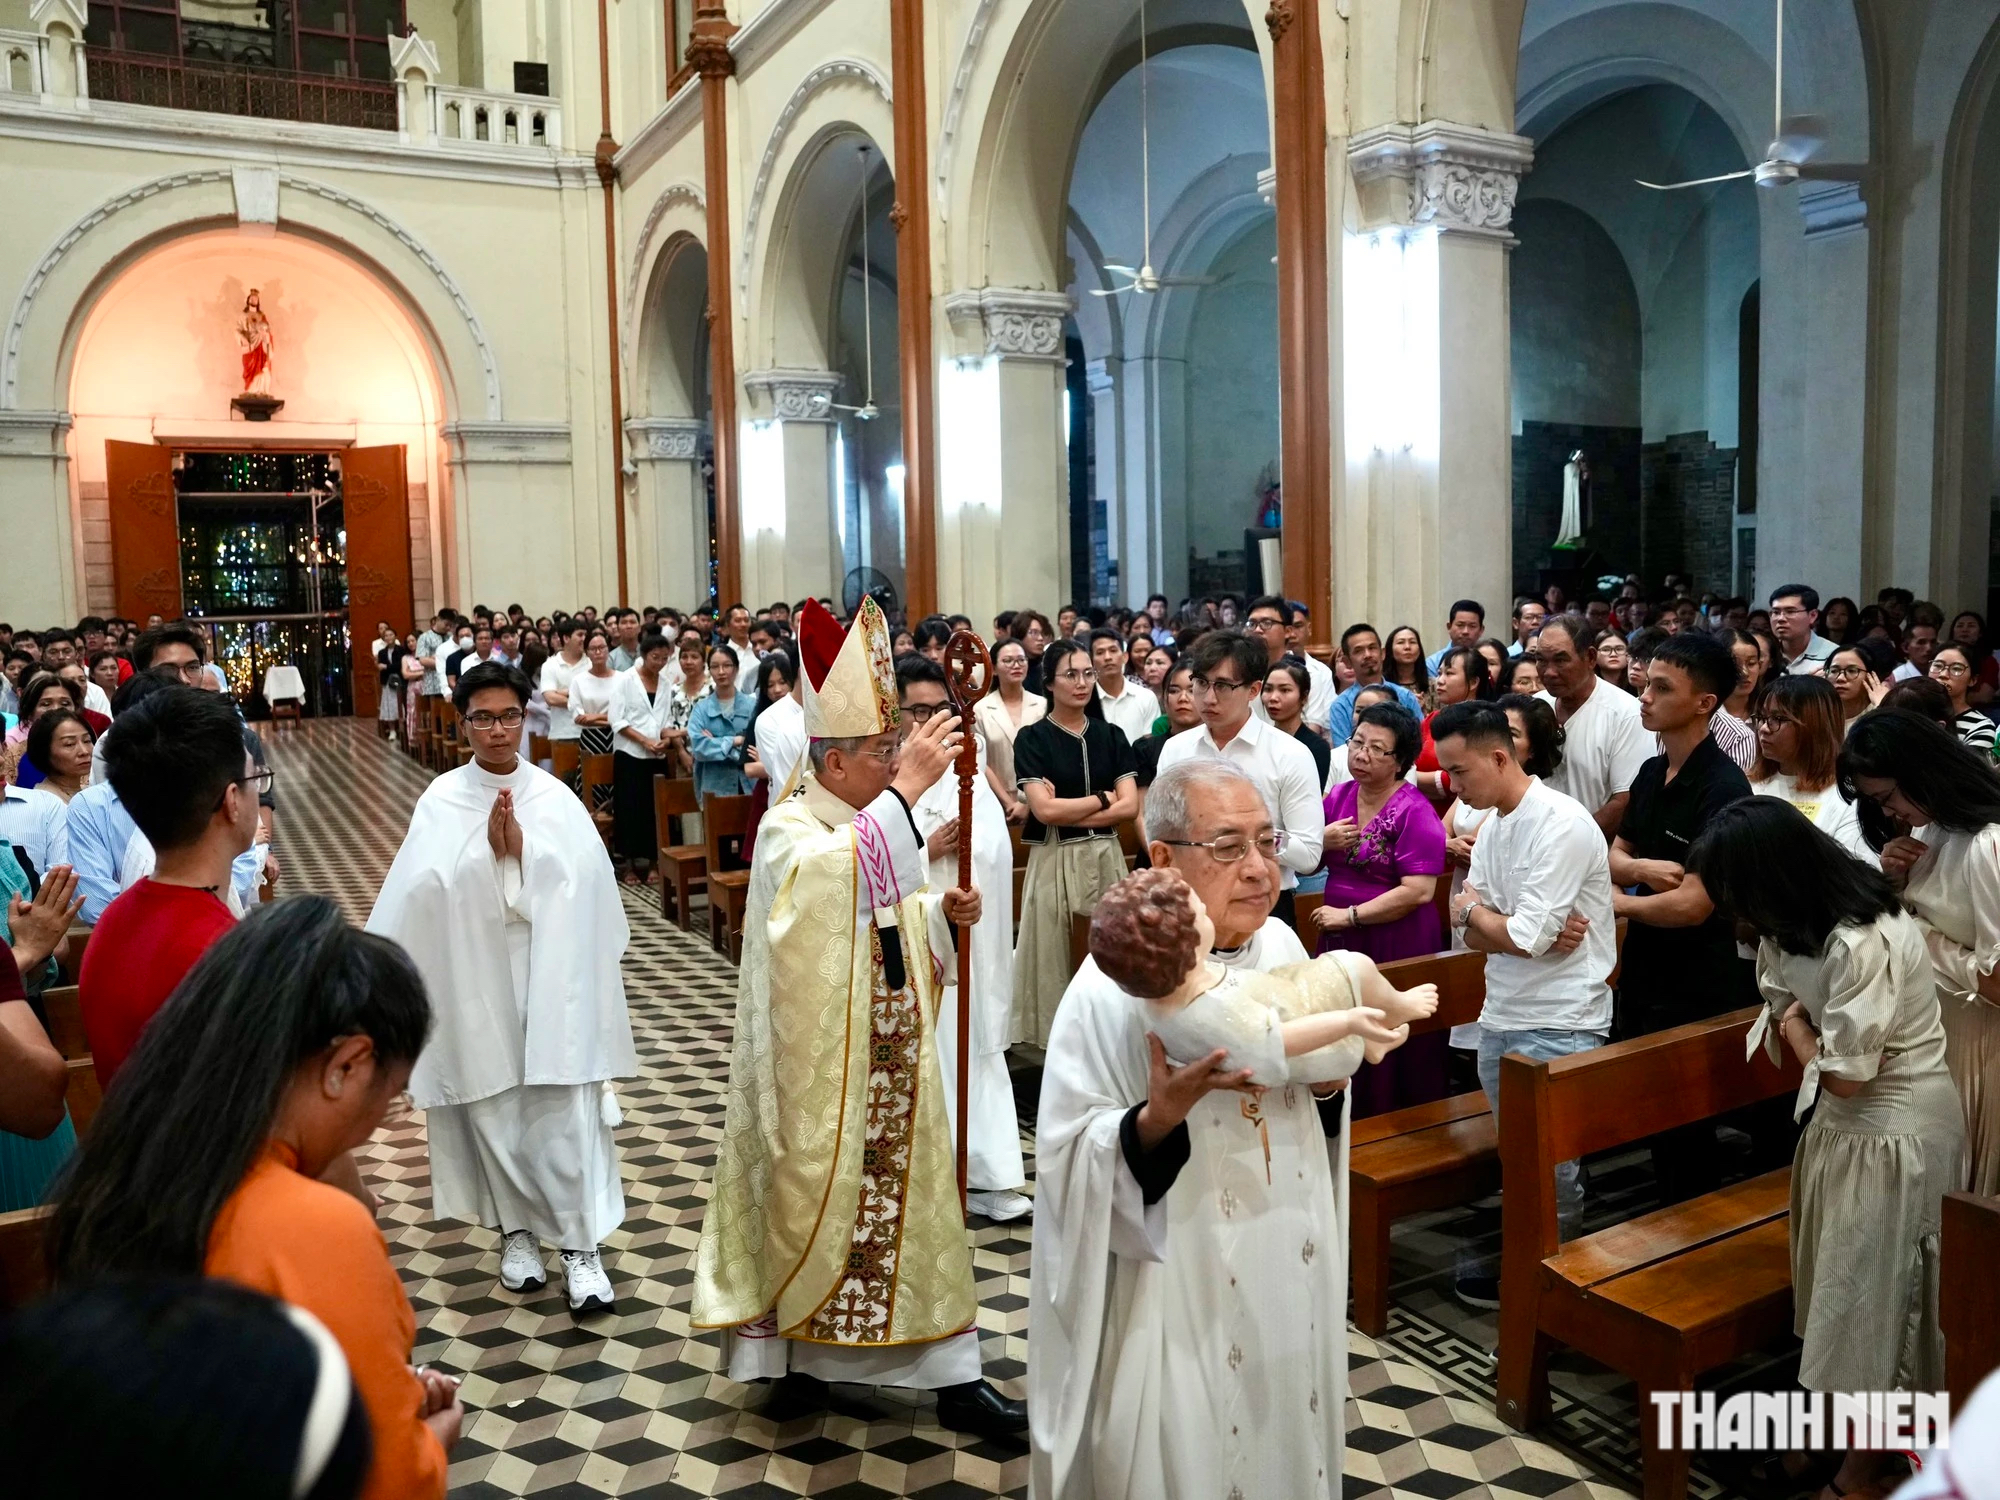 Hơn 1.000 người vào Nhà thờ Đức Bà Sài Gòn làm thánh lễ mừng Chúa Giáng sinh- Ảnh 5.